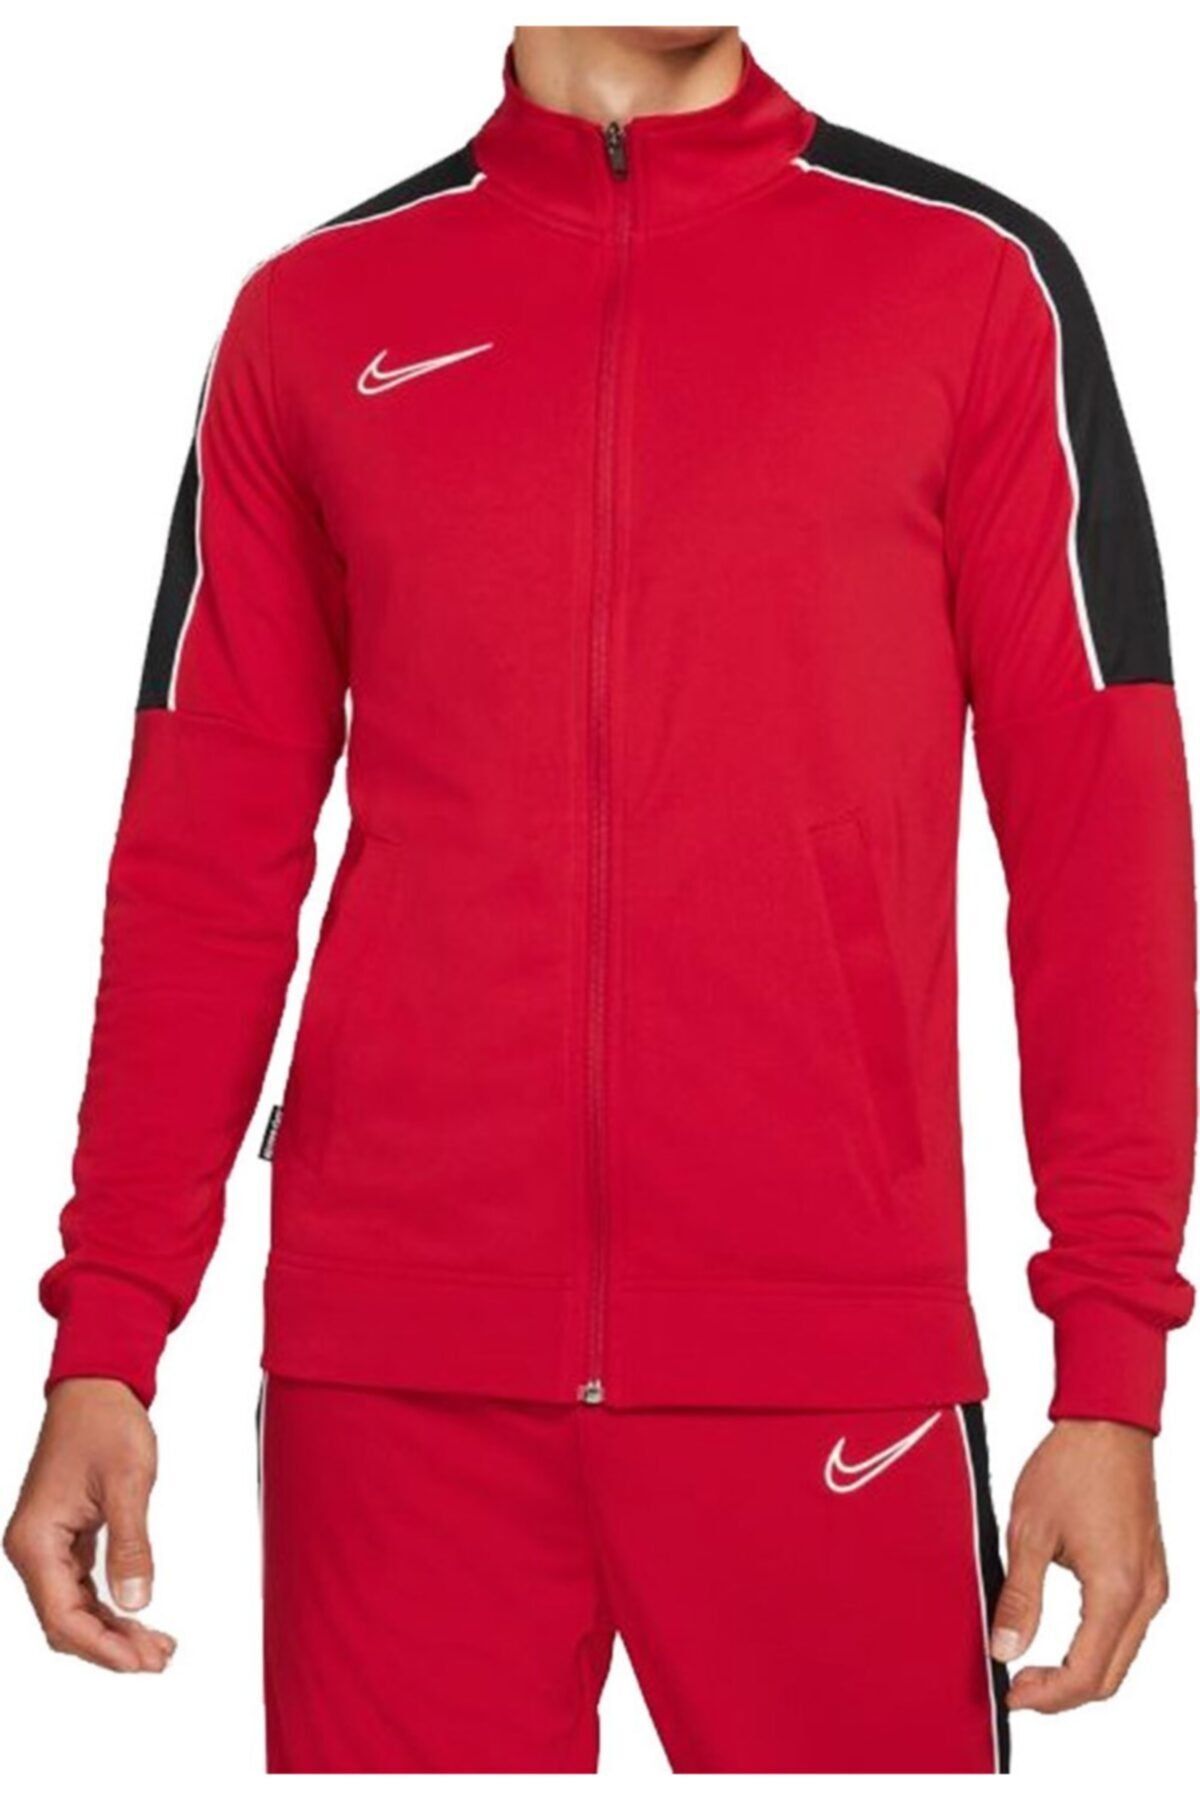 Nike M Nk Df Acd Trk Jkt Kp Fp Jb Erkek Kırmızı Ceket - Da5566-687